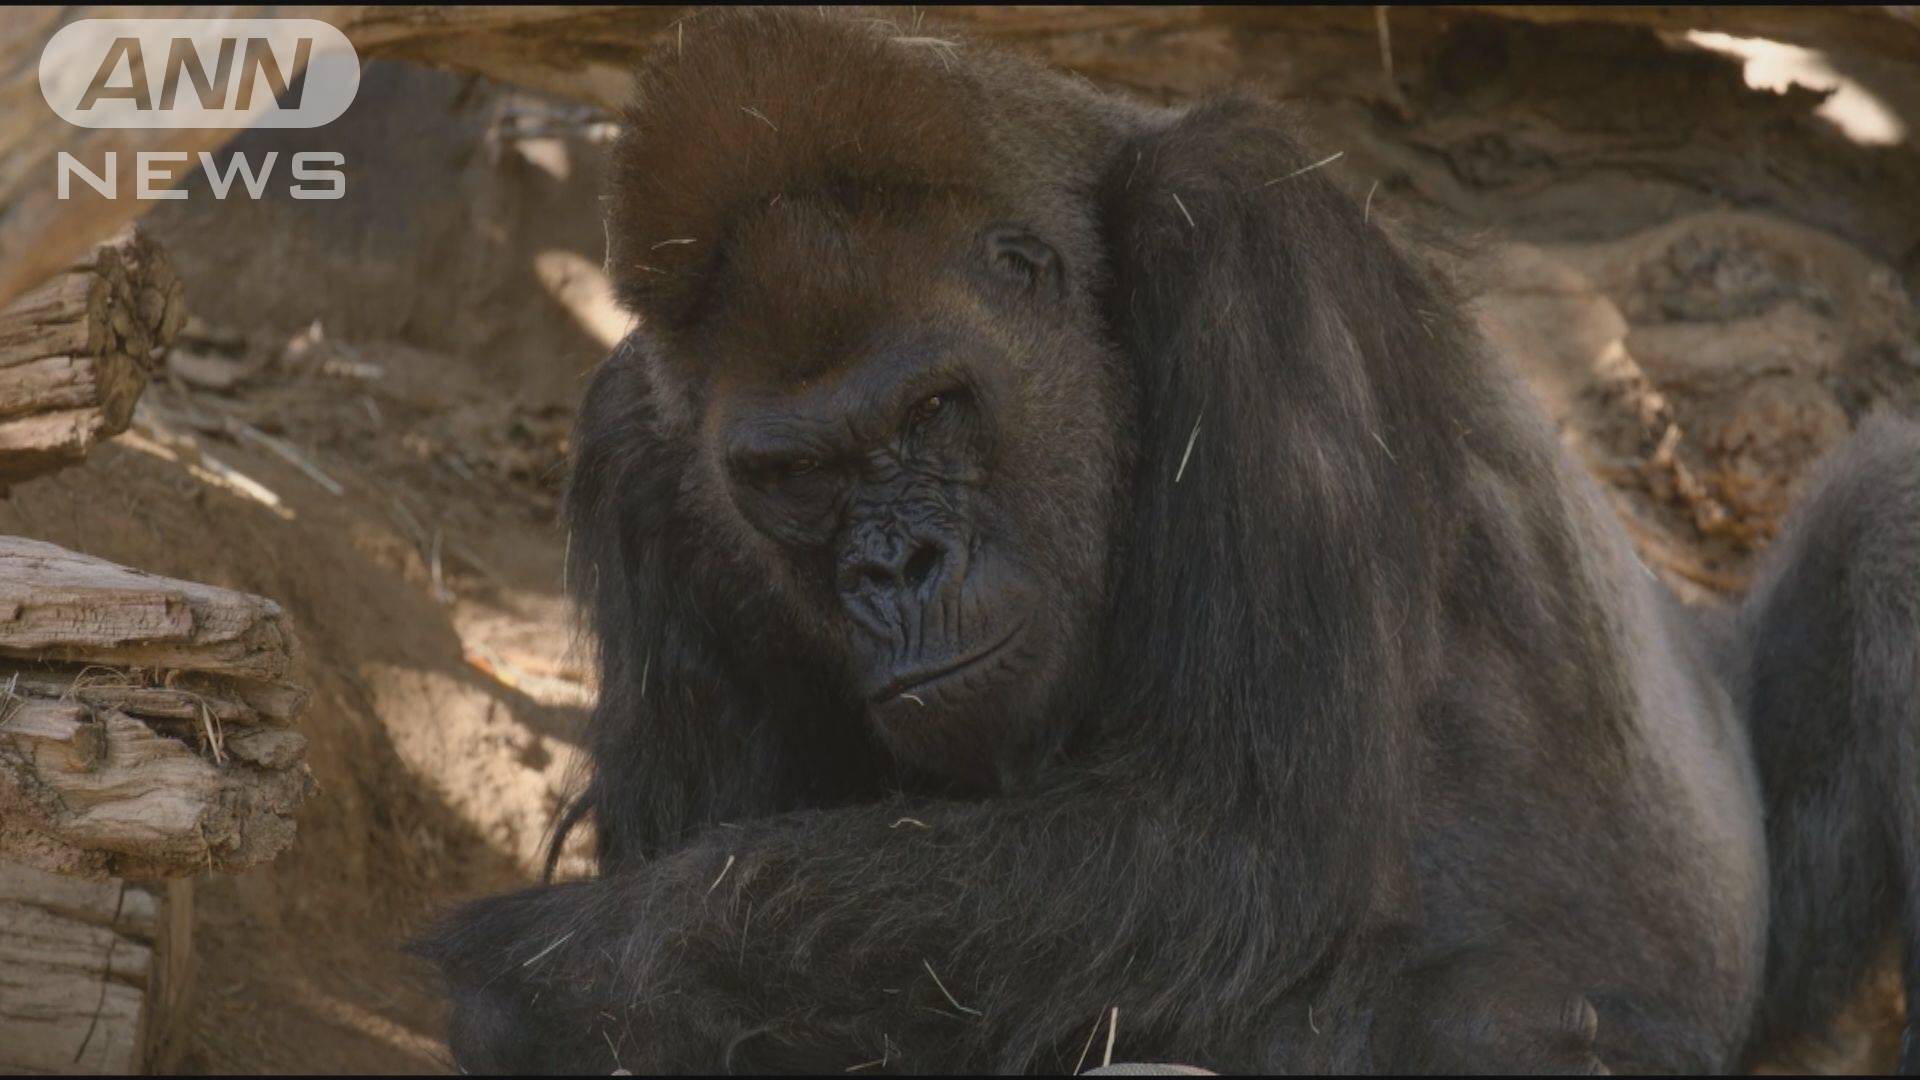 類人猿では初 米動物園でゴリラのコロナ感染を確認 テレ朝news テレビ朝日のニュースサイト